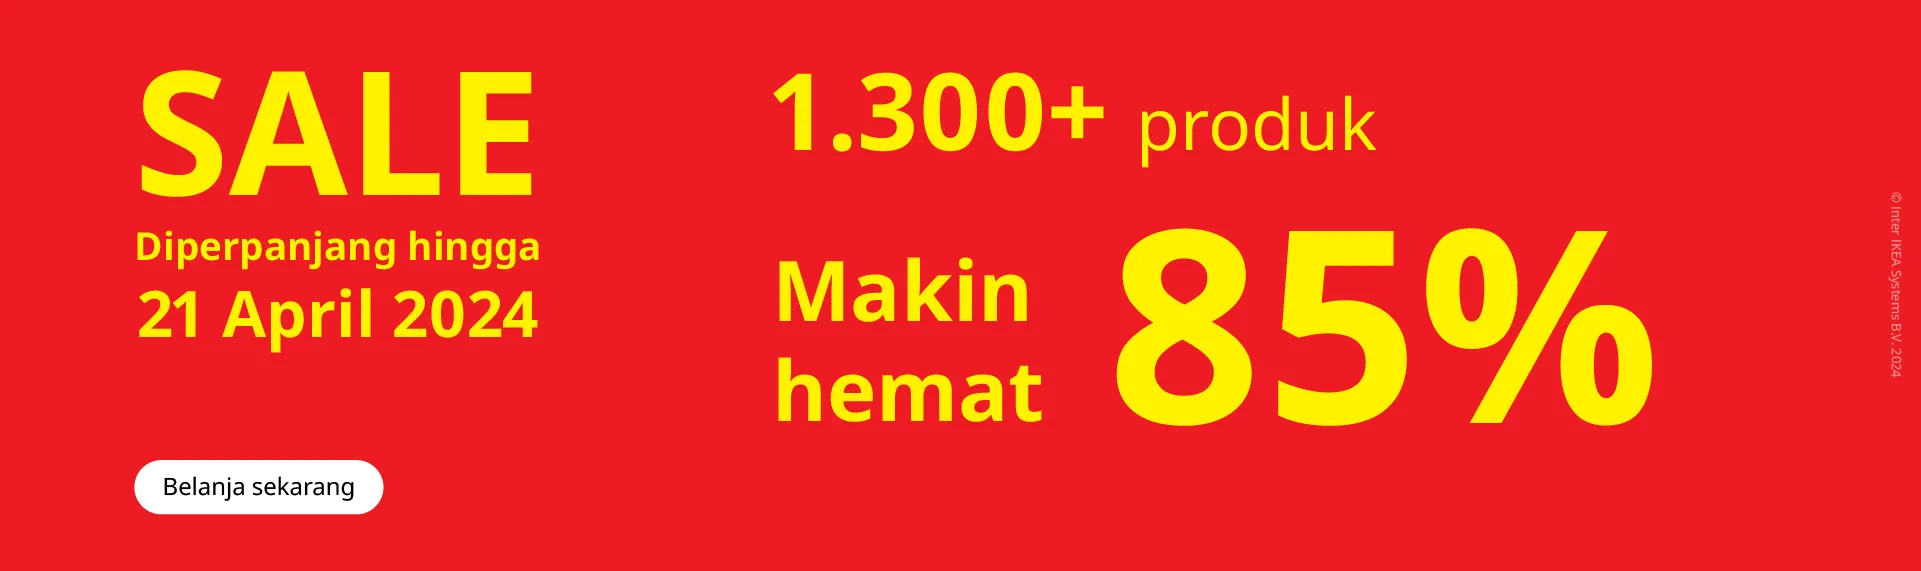 Promo IKEA MID YEAR SALE diperpanjang sd. tanggal 21 April 2024 - HEMAT hingga 85% untuk lebih dari 1.300 perabot dan aksesoris rumah